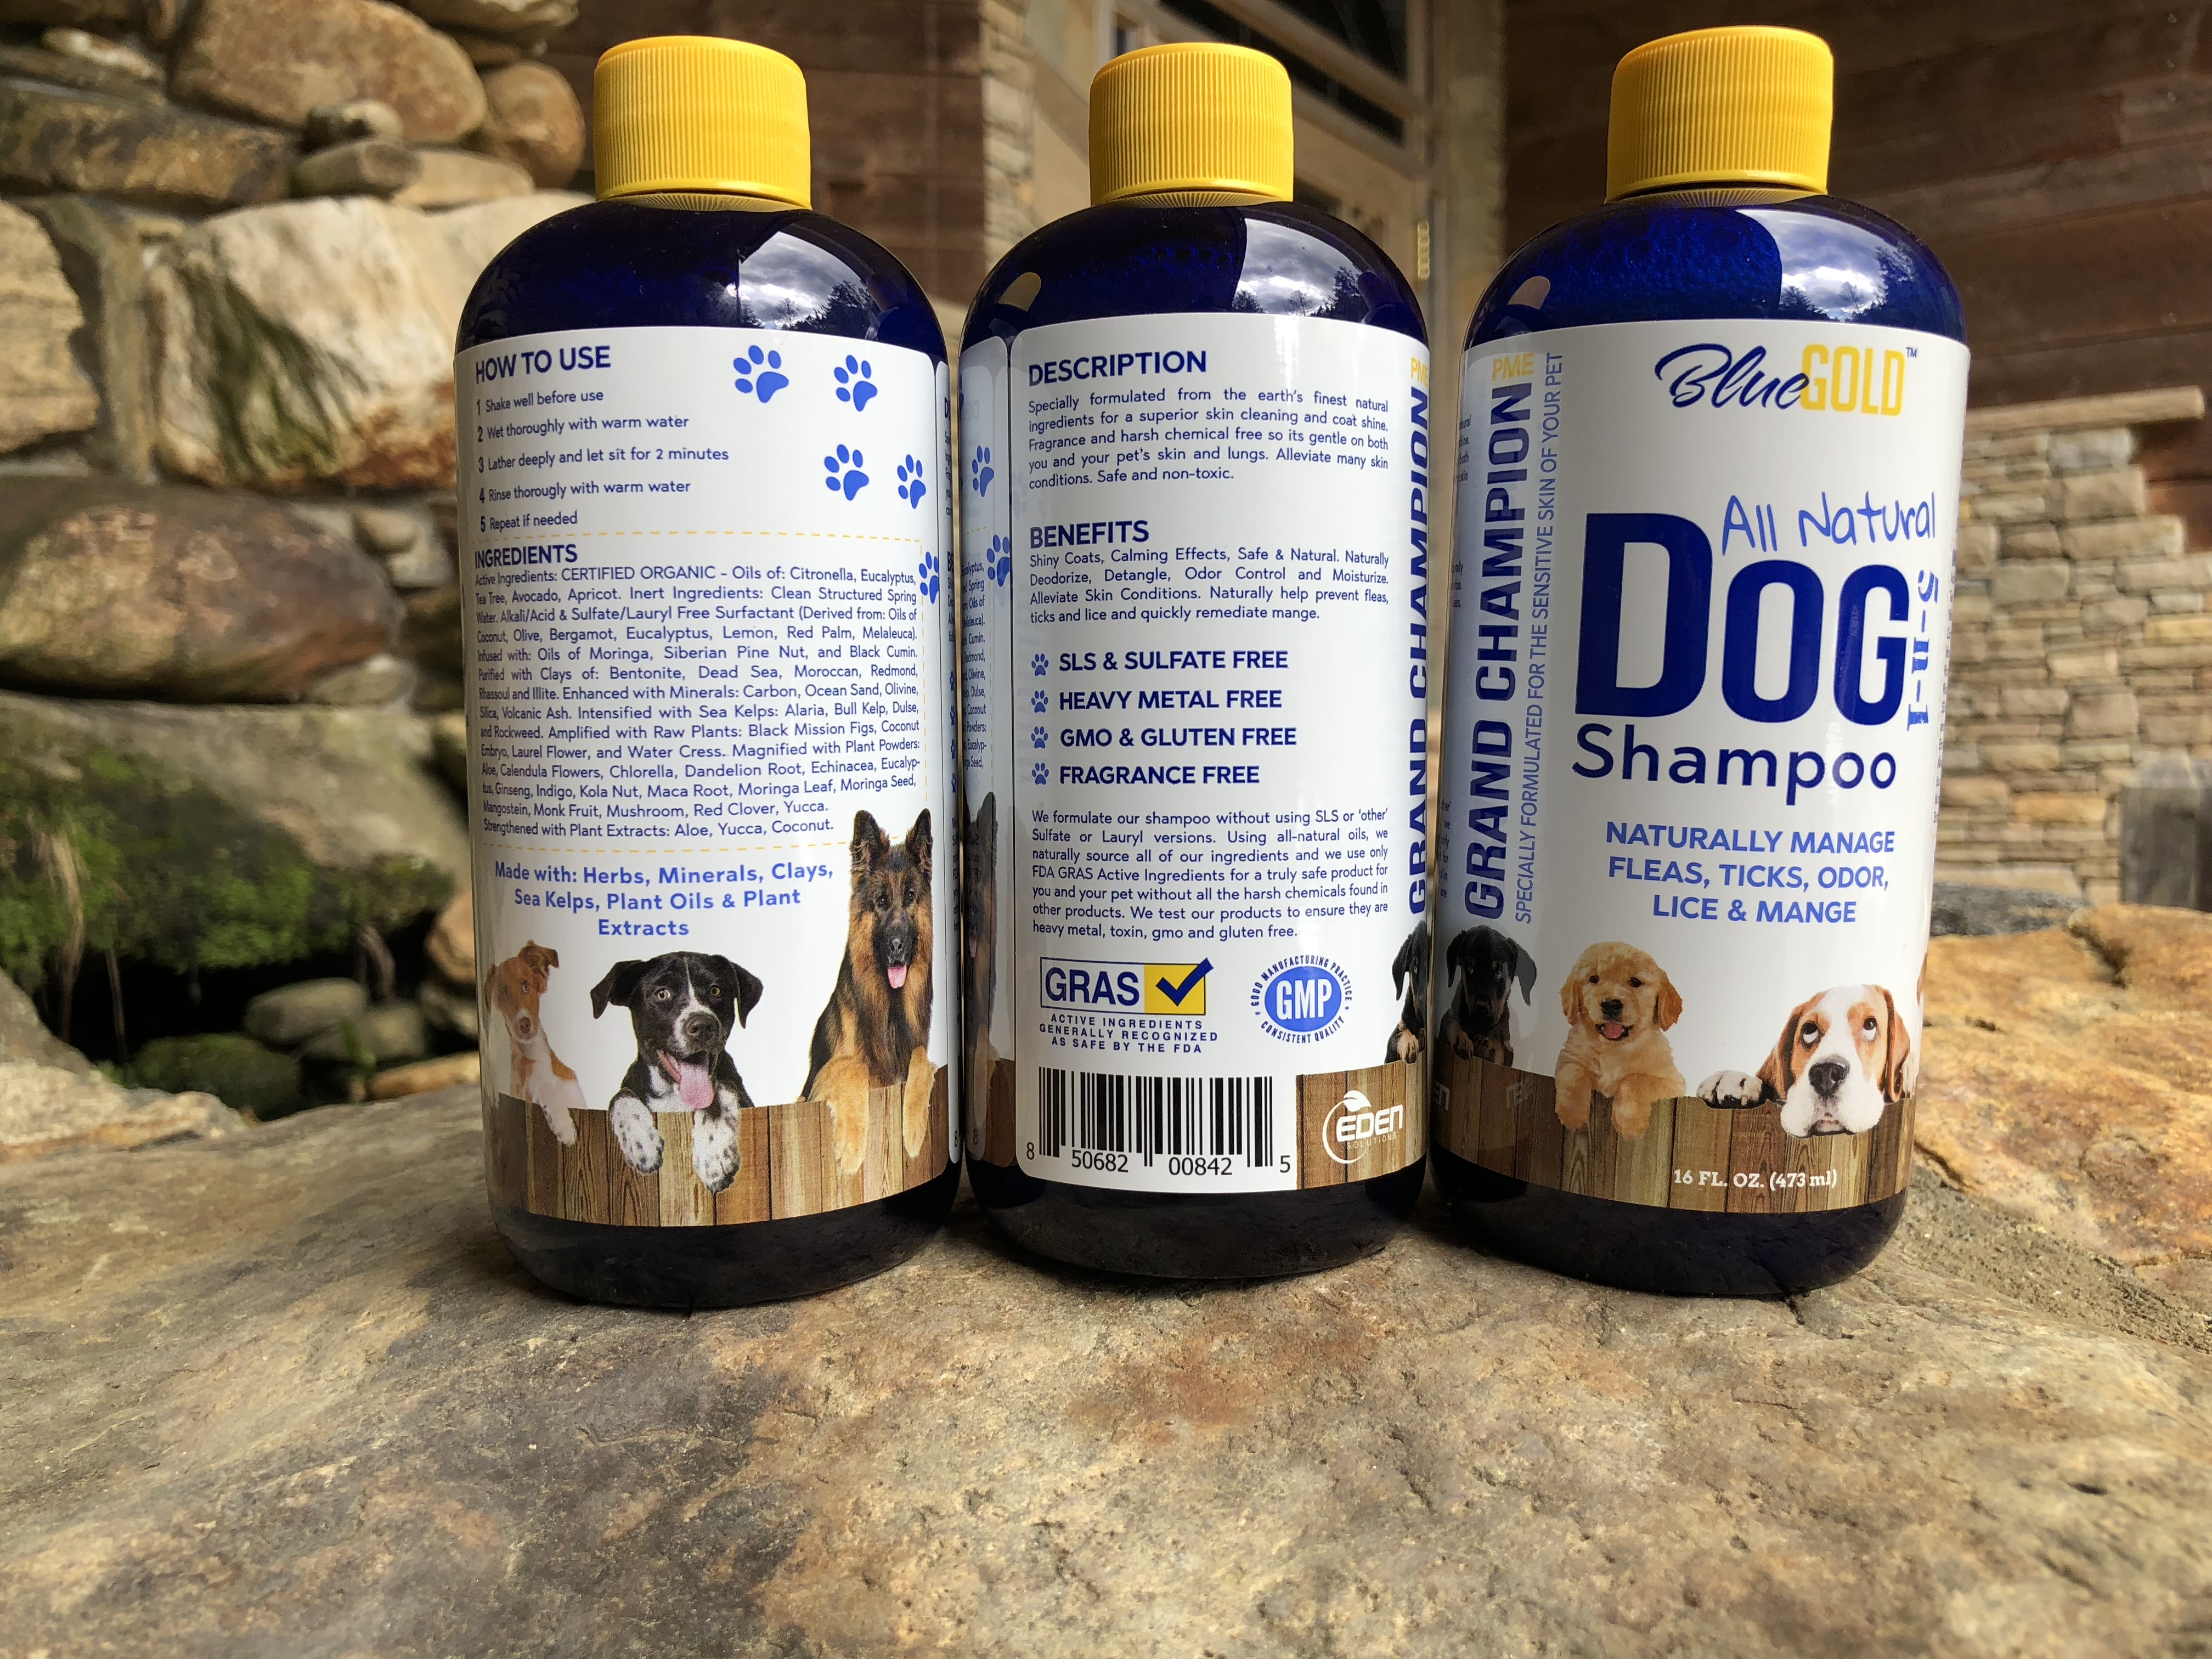 dog shampoo to help with shedding